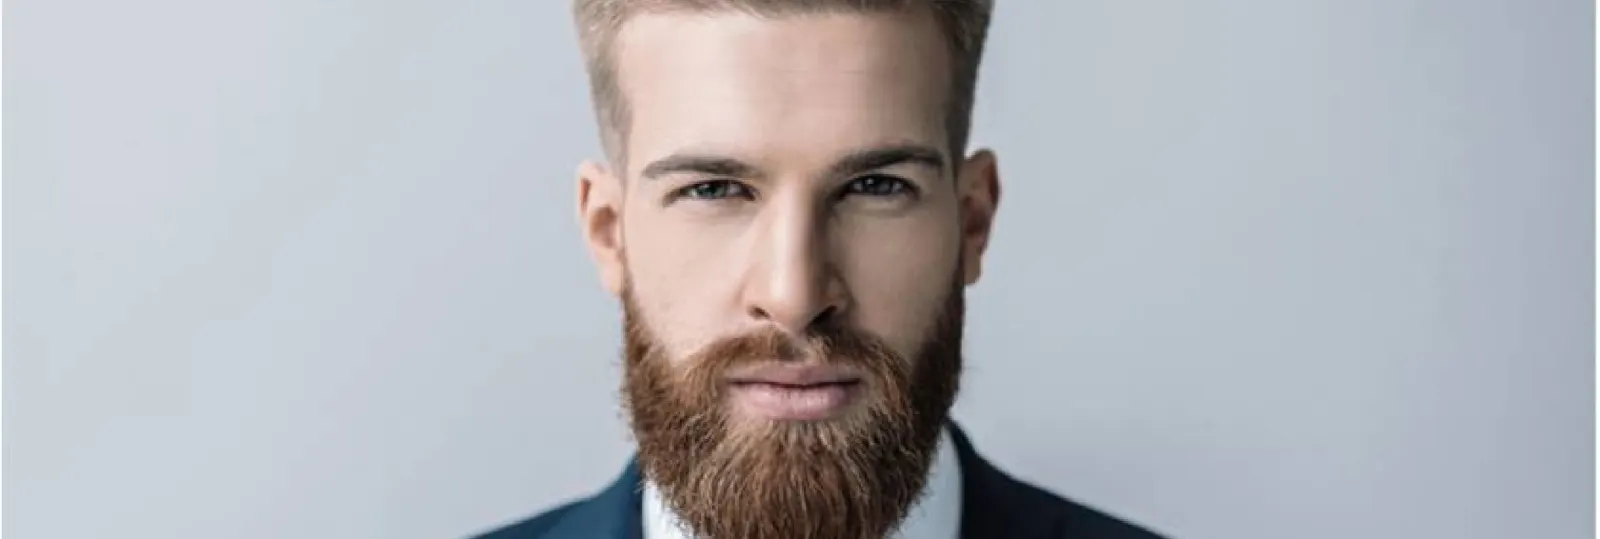 Pourquoi l'homme barbu est-il plus confiant